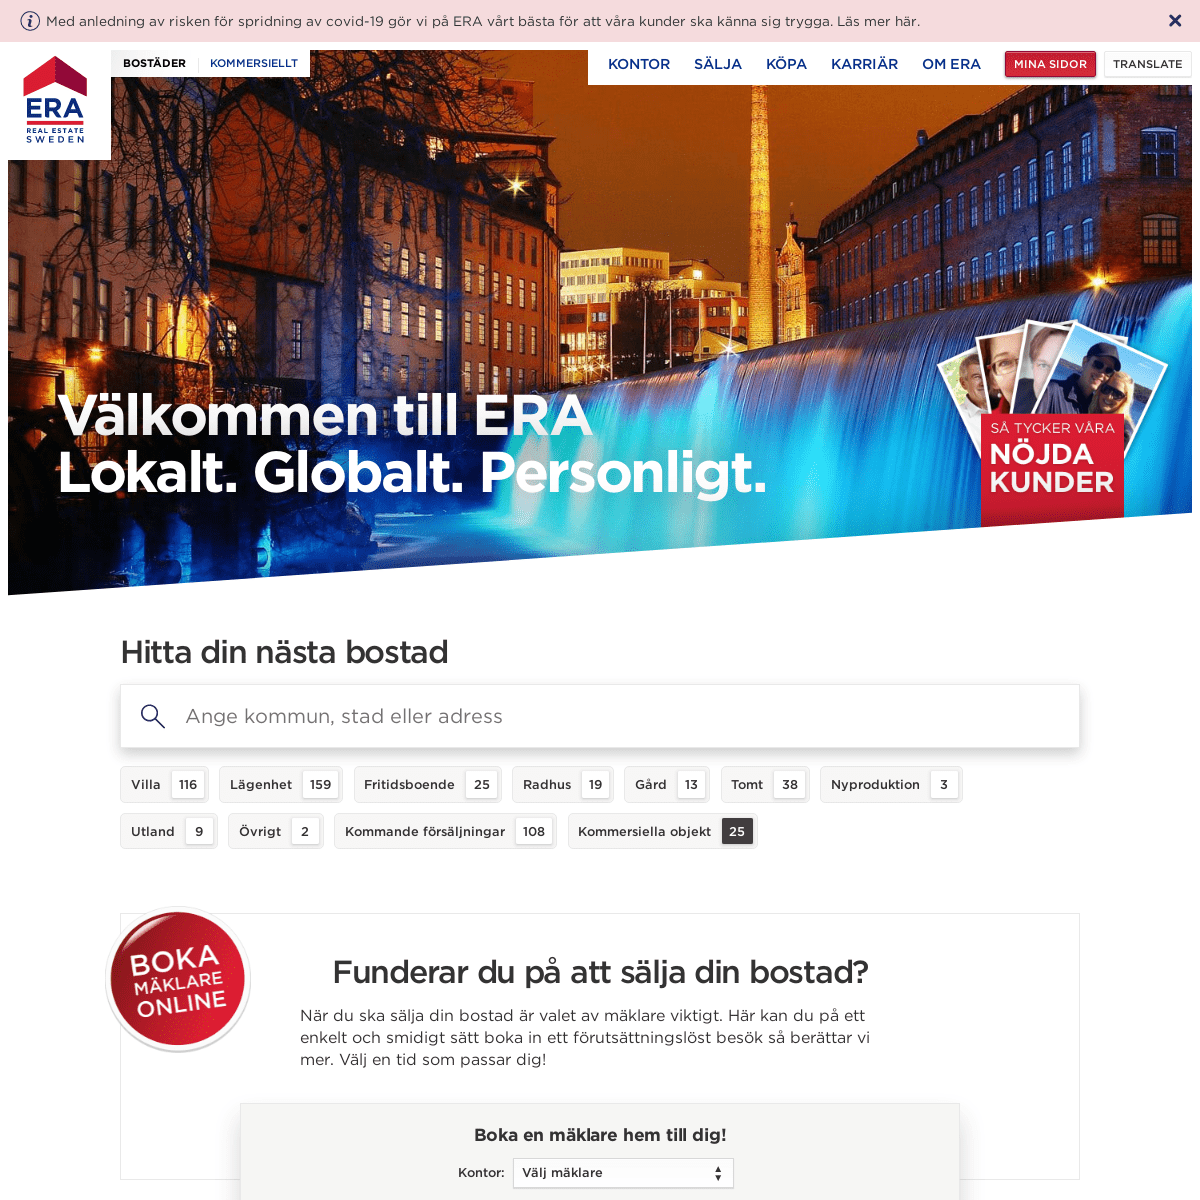 A complete backup of https://erasweden.com